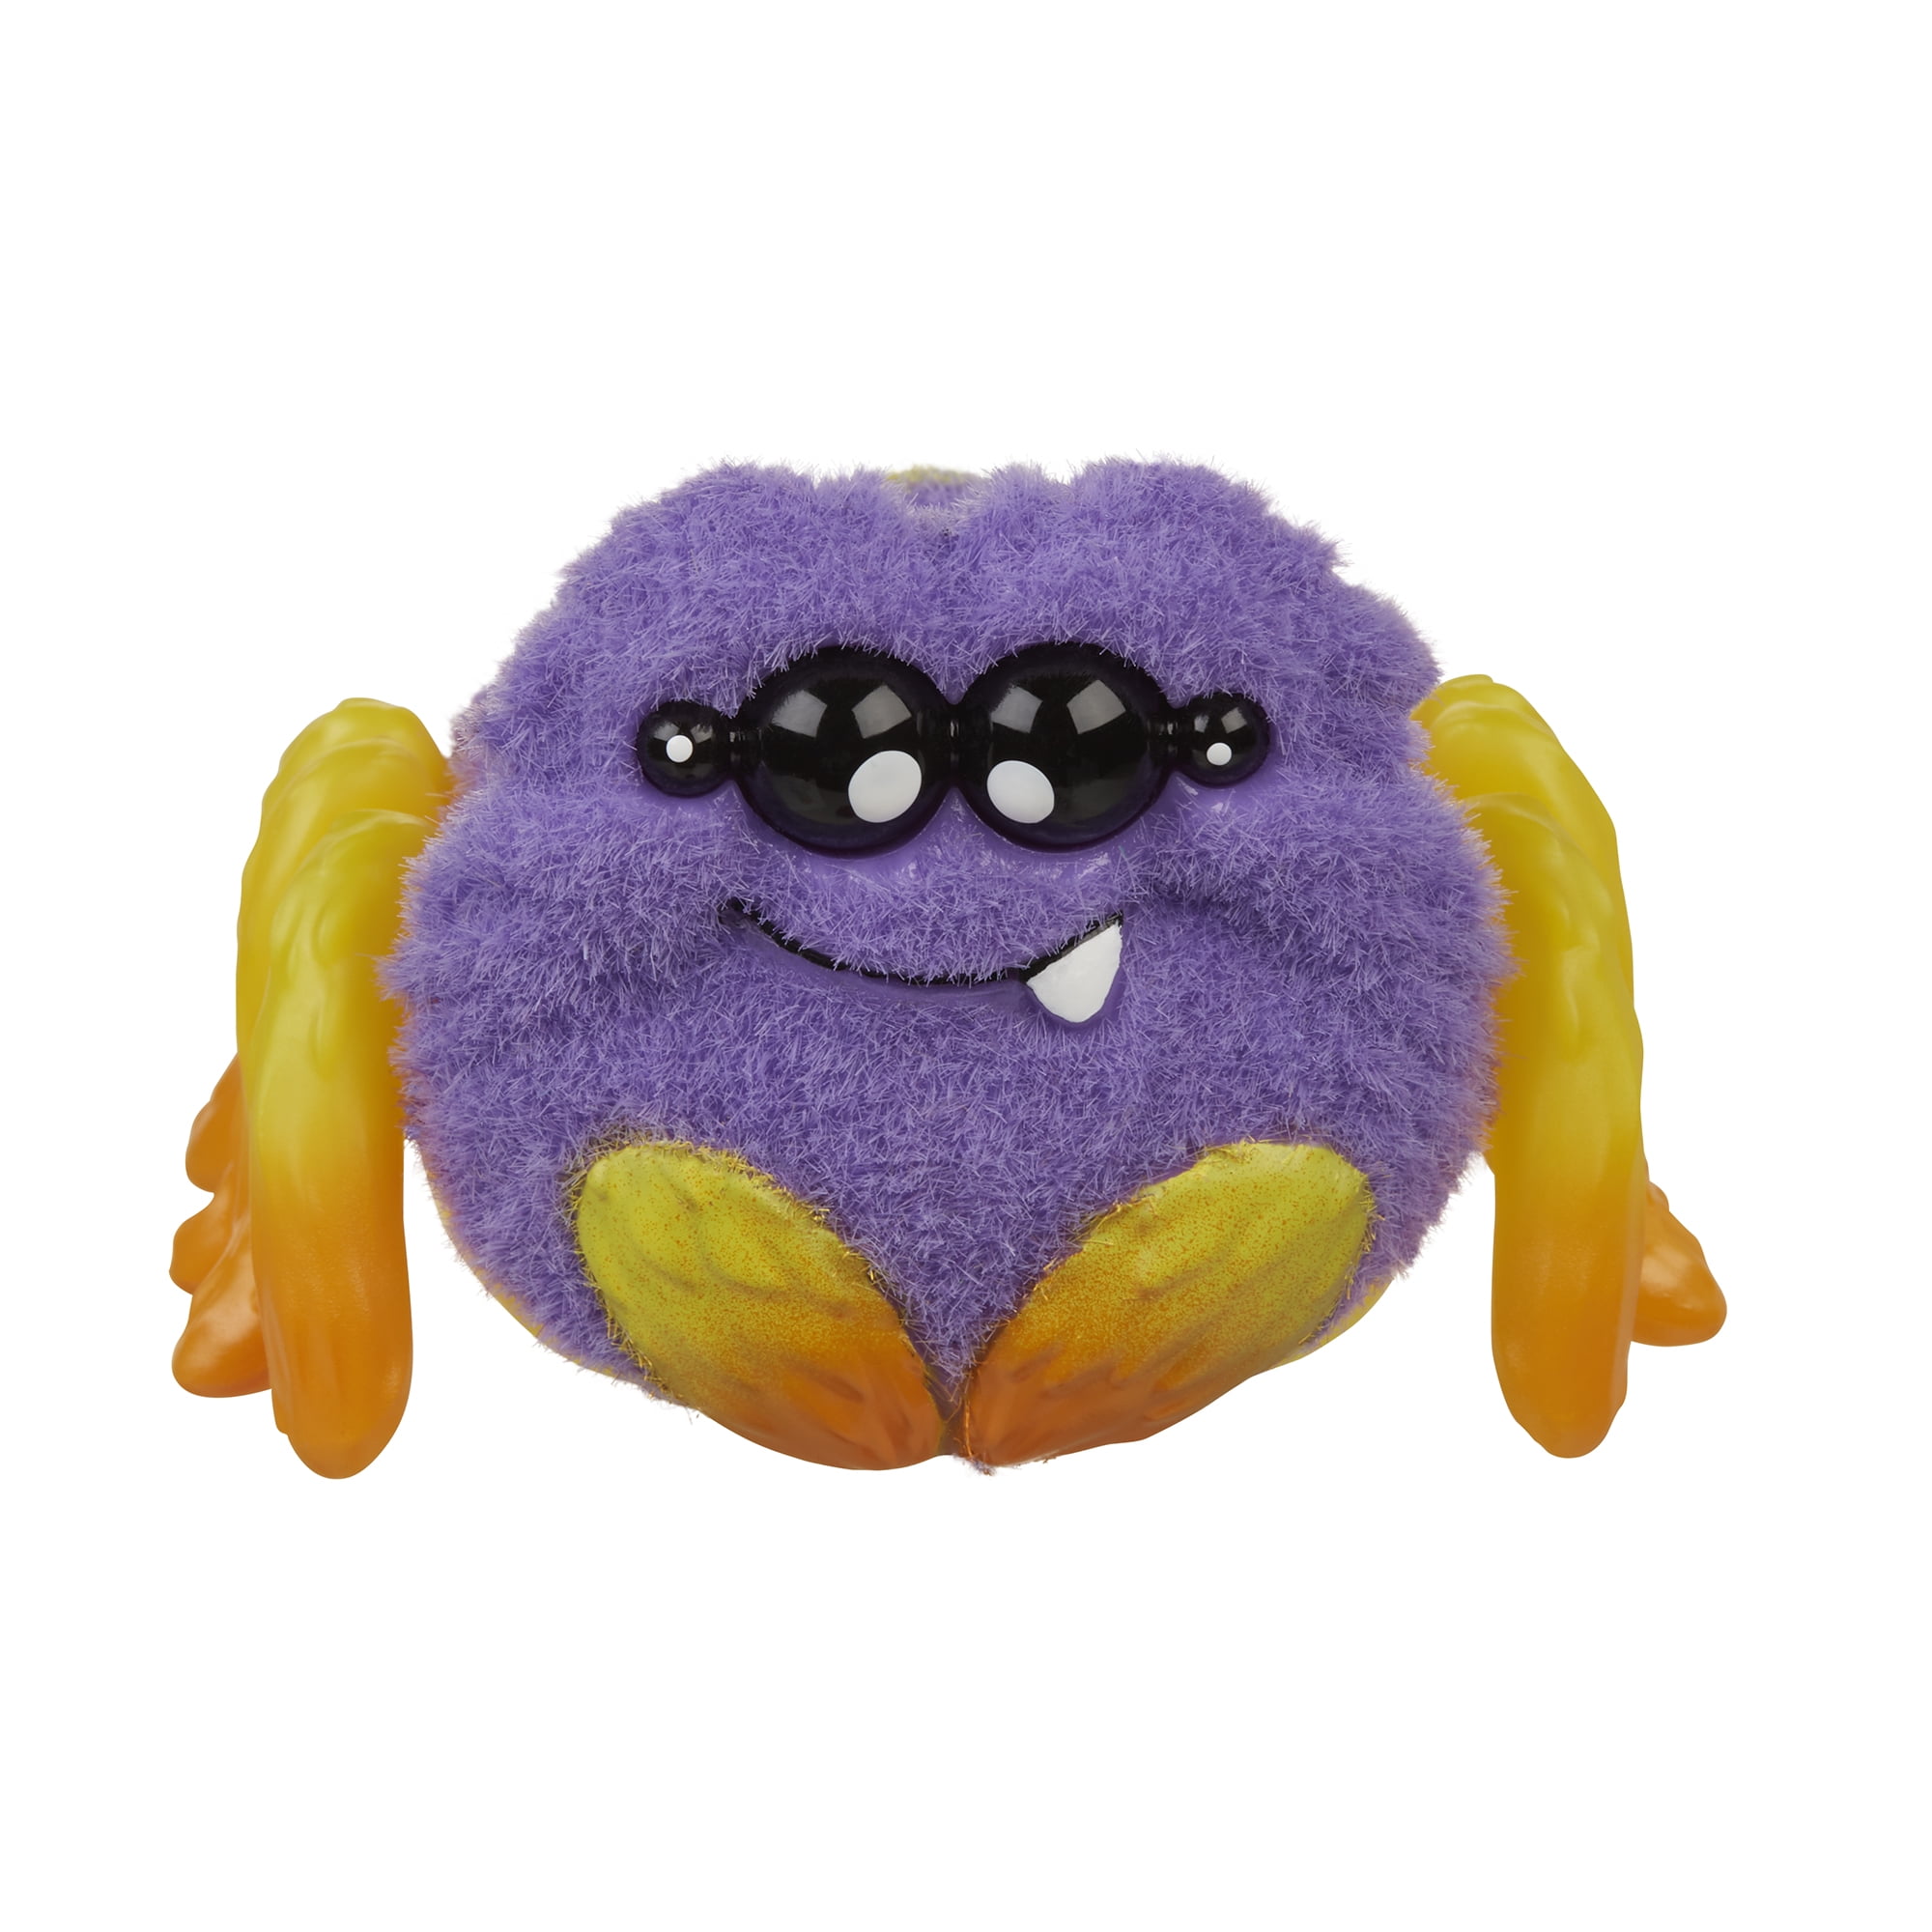 Grumblies Bolt Action Figure Purple 9 Plush Interactive Toy for sale online 